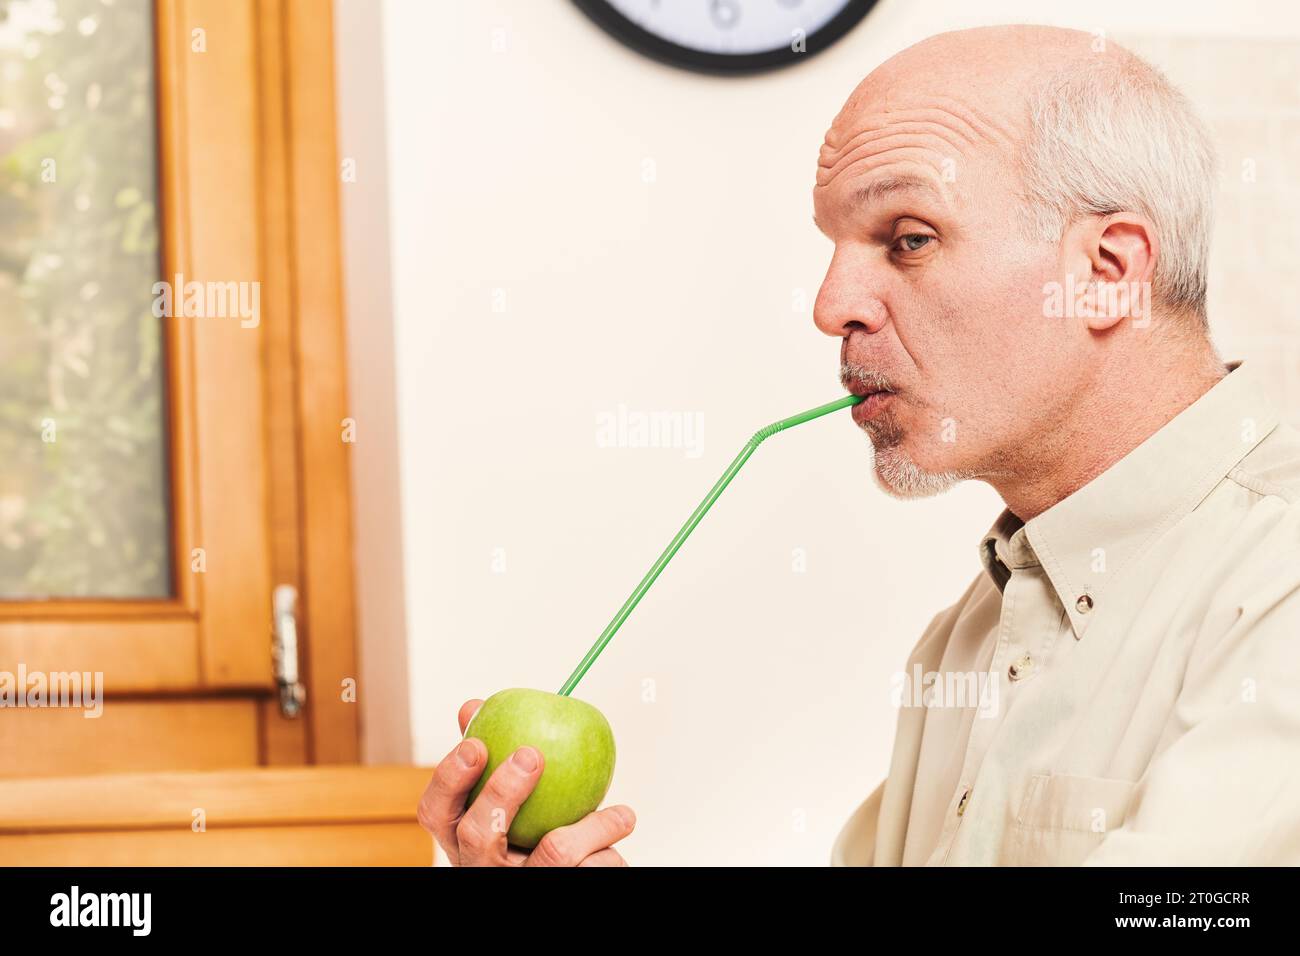 Nella sua cucina, un anziano malizioso e giocoso allegra ogni vitamina da una mela verde. Mentre scherza, crede fermamente nell'adagio e nell'importa Foto Stock